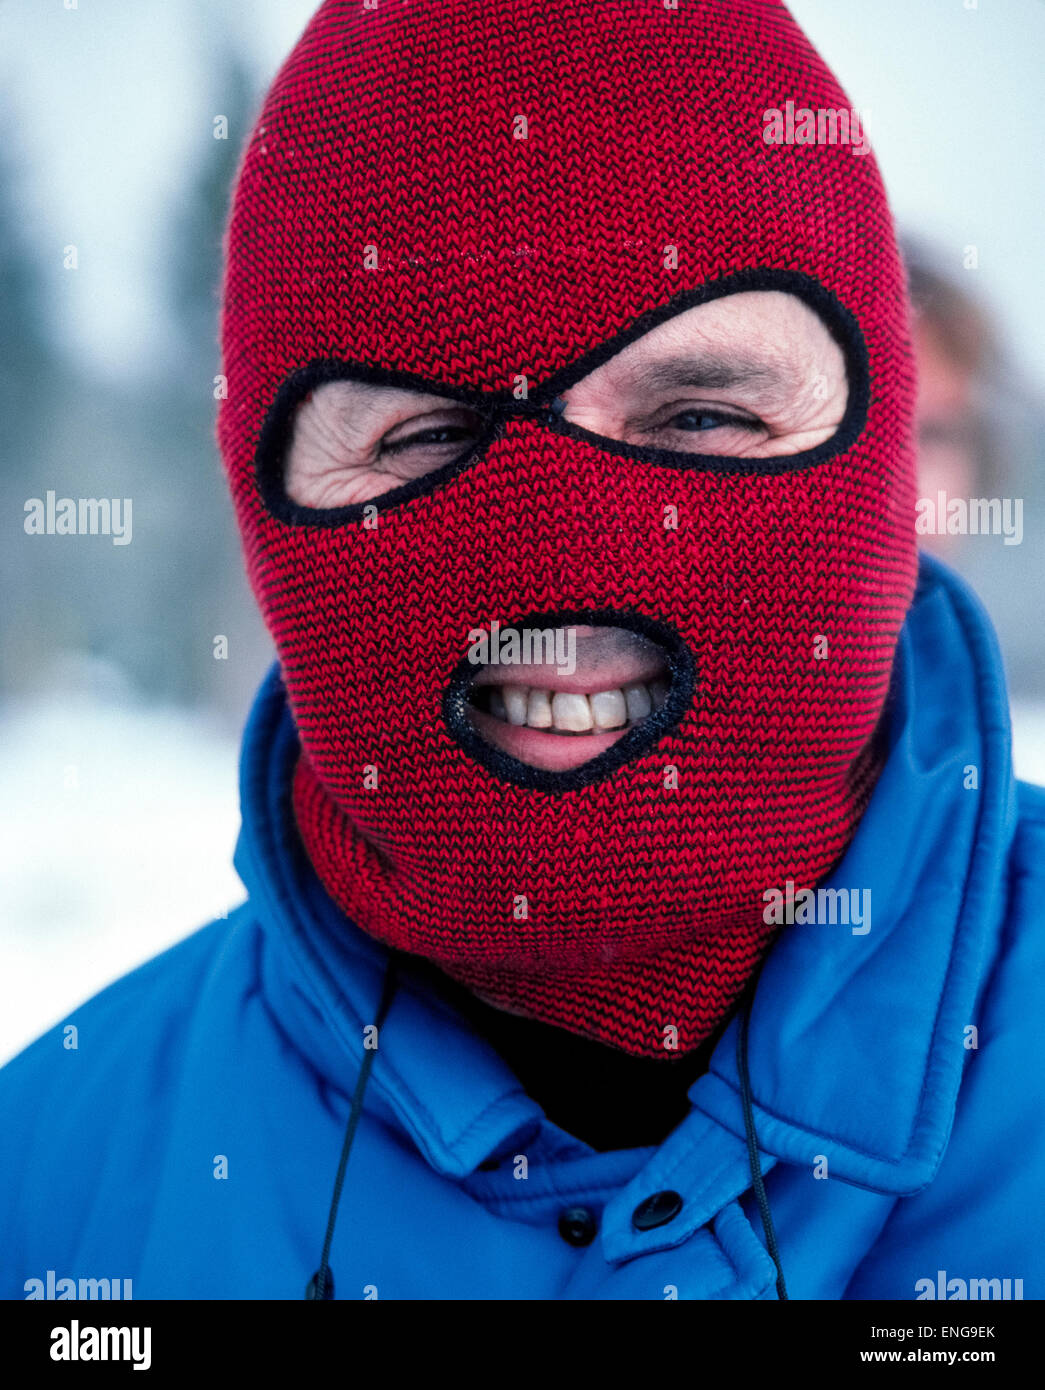 Terminal Violín respirar Un tejido rojo y negro pasamontañas cubre y calienta la cabeza y el cuello  de un hombre que está haciendo un invierno visita a Wyoming, Estados Unidos  Fotografía de stock - Alamy